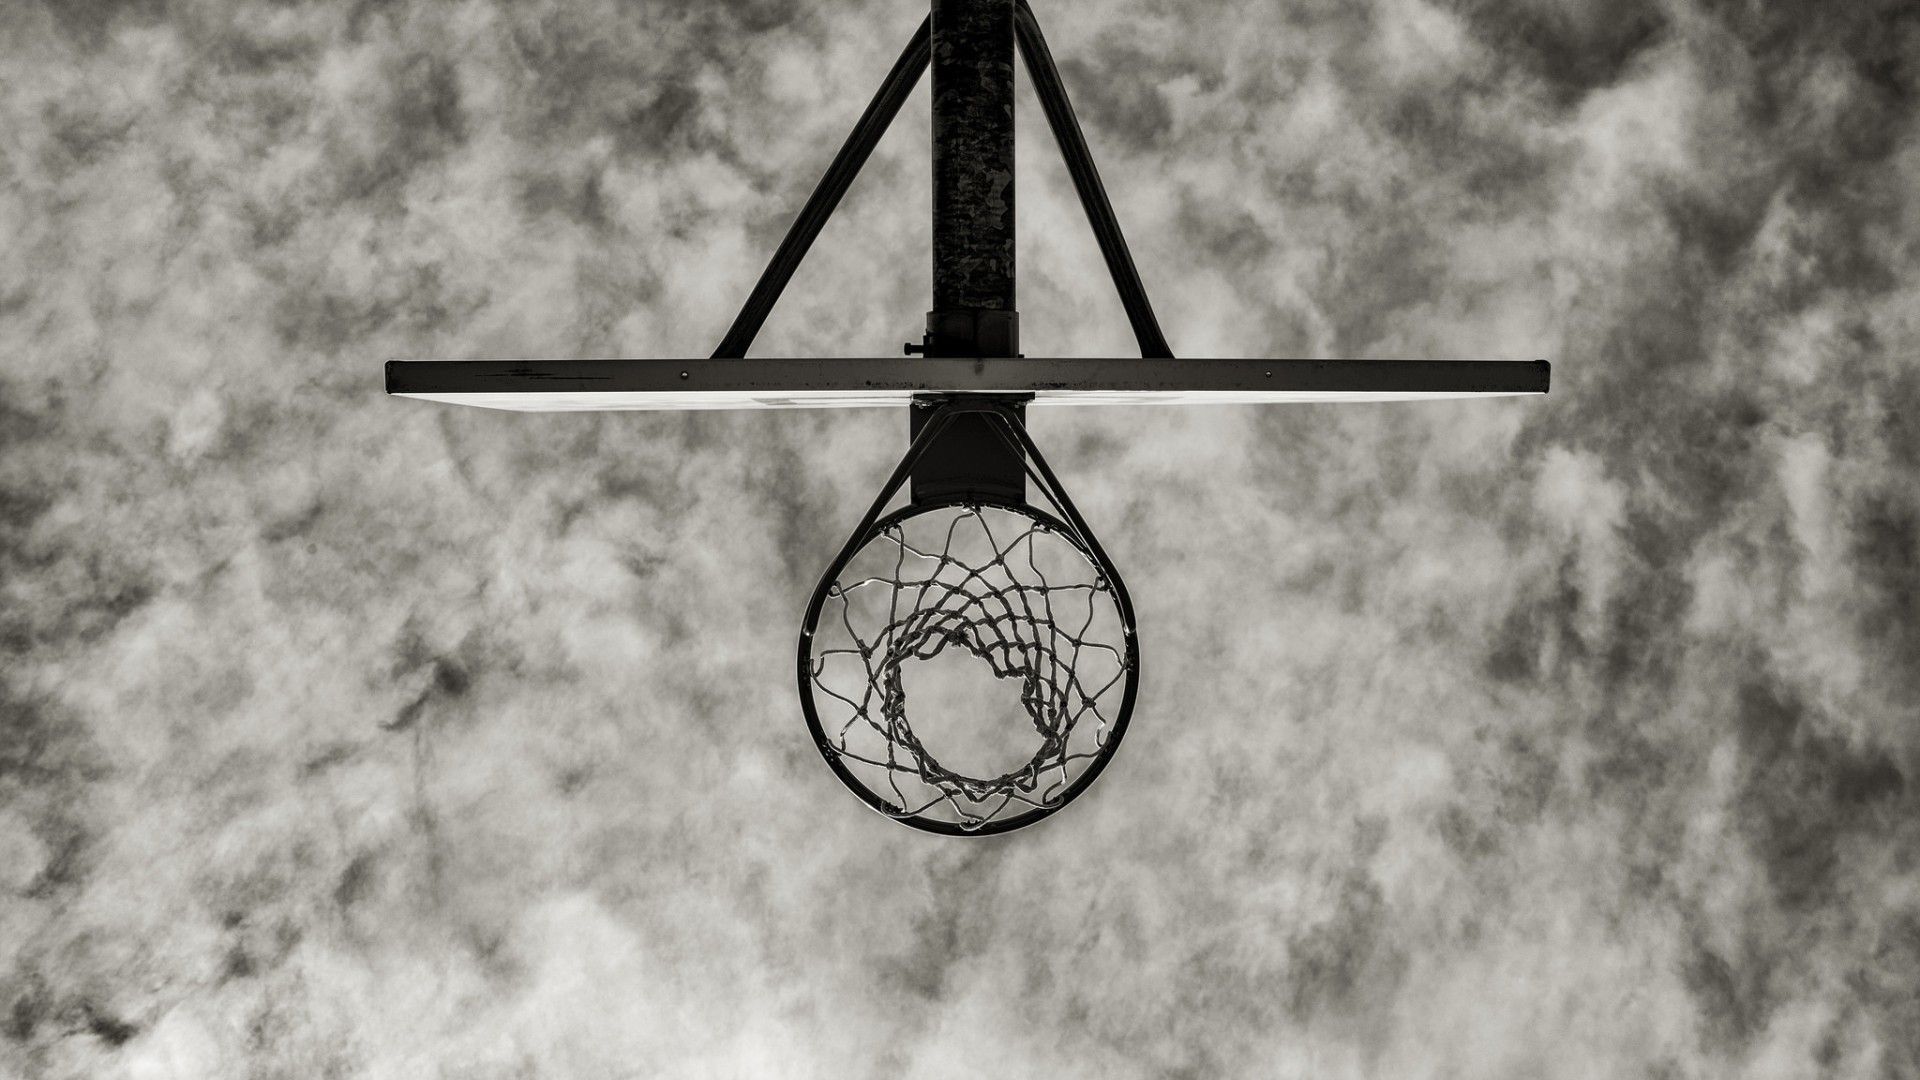 fonds d'écran de basket ball,noir et blanc,l'horloge,monochrome,ciel,la photographie